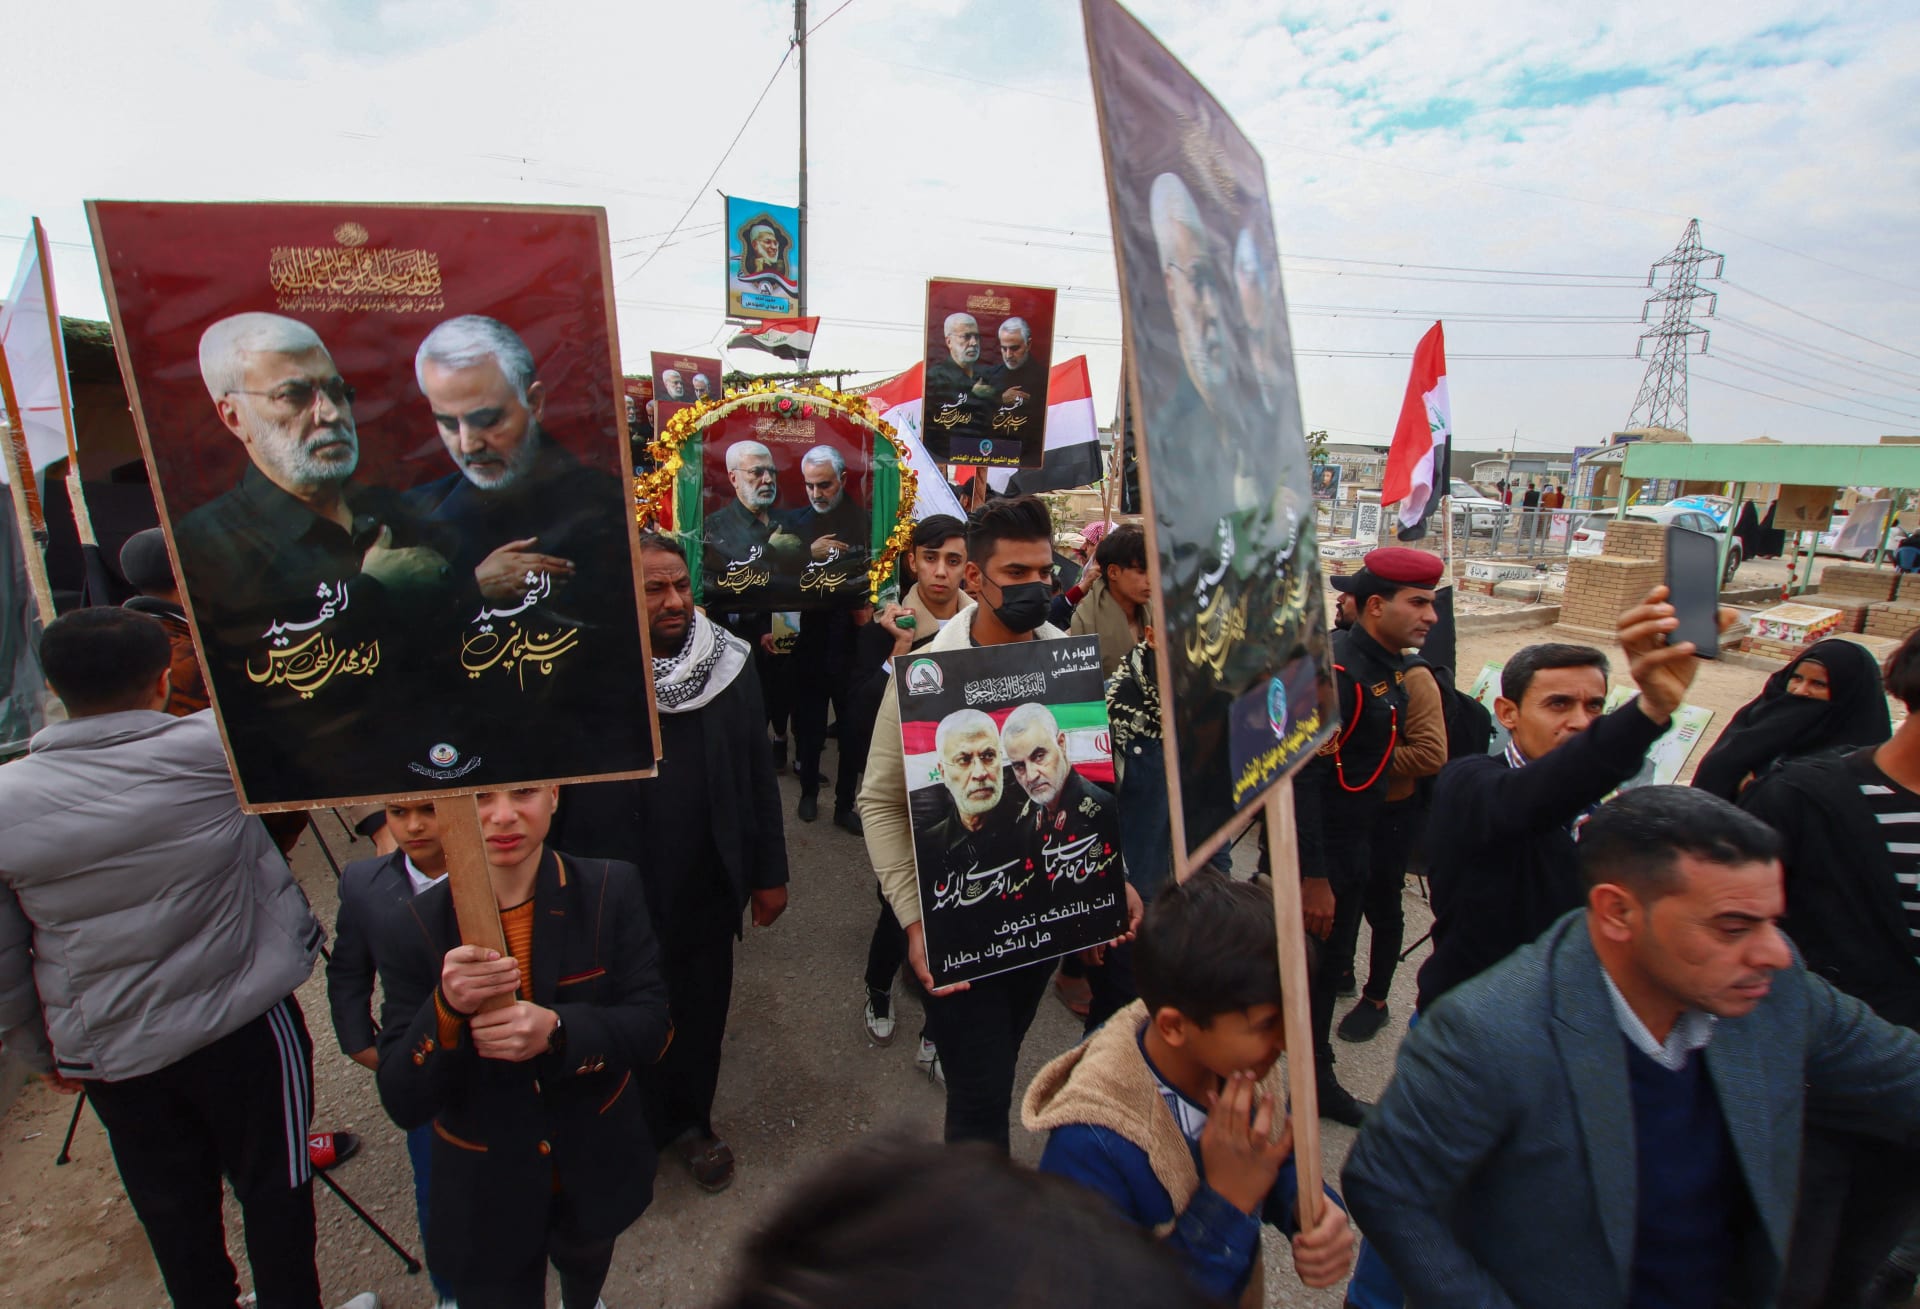 جنازة رمزية لسليماني والمهندس في مدينة النجف العراقية 